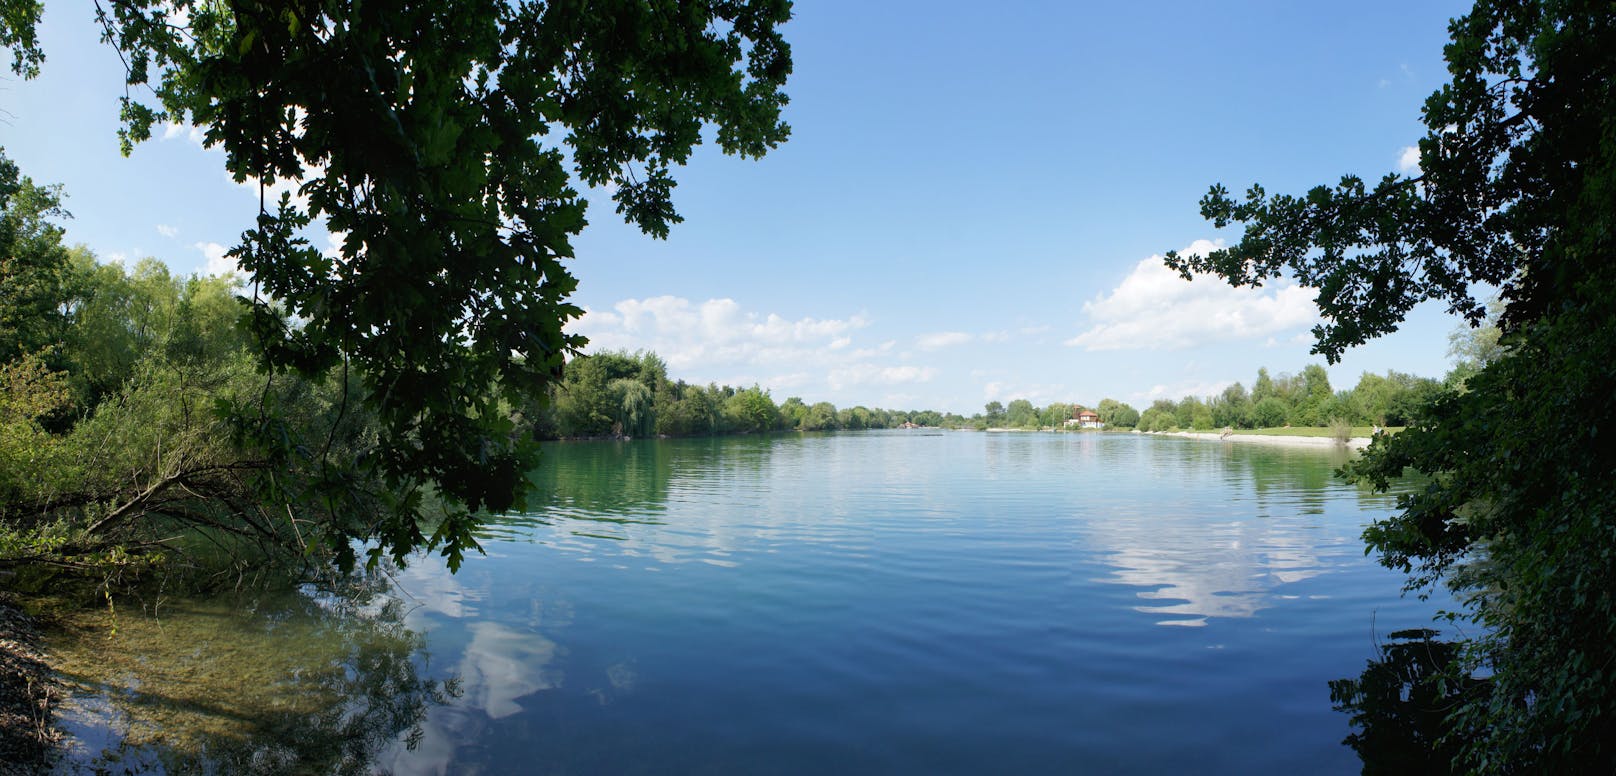 Topqualität: Der Ratzersdorfer See erhielt Bestnote.